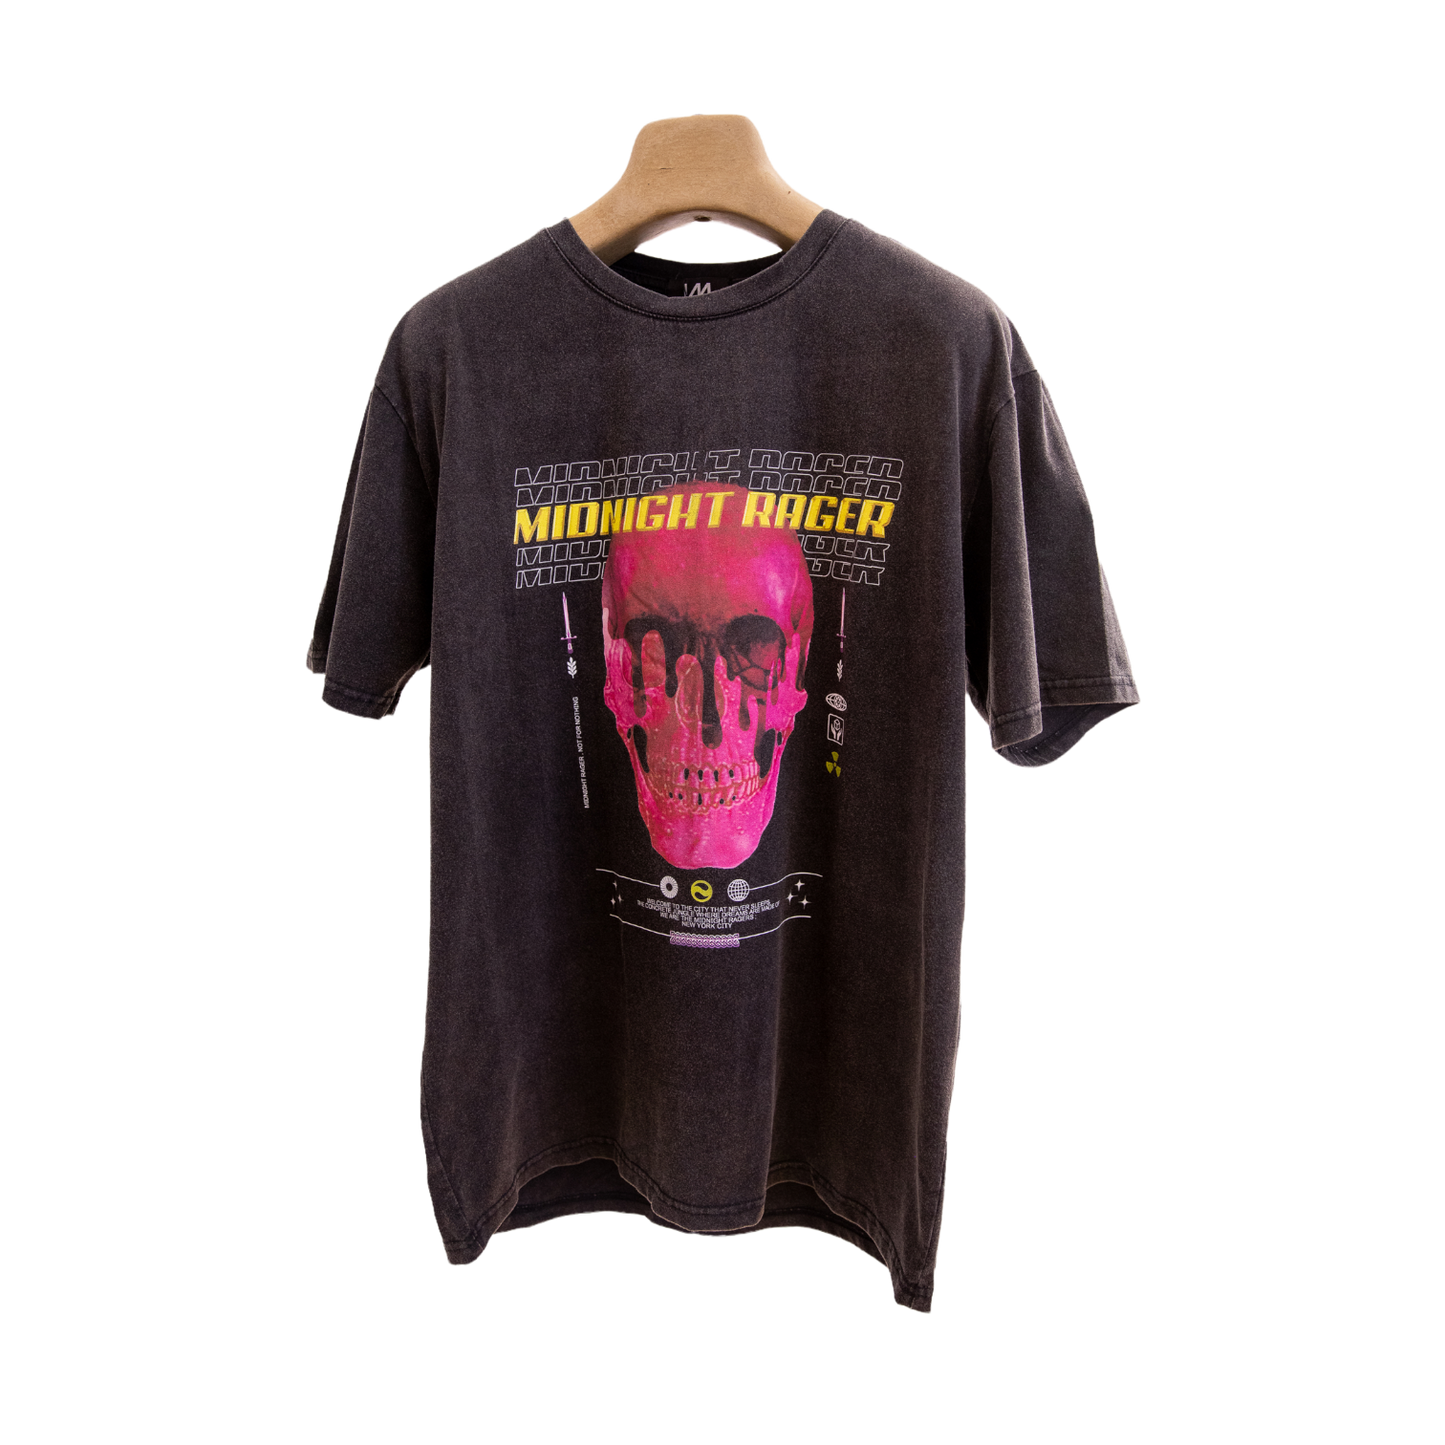 Midnight Rager shirt - LVMLOSANGELES